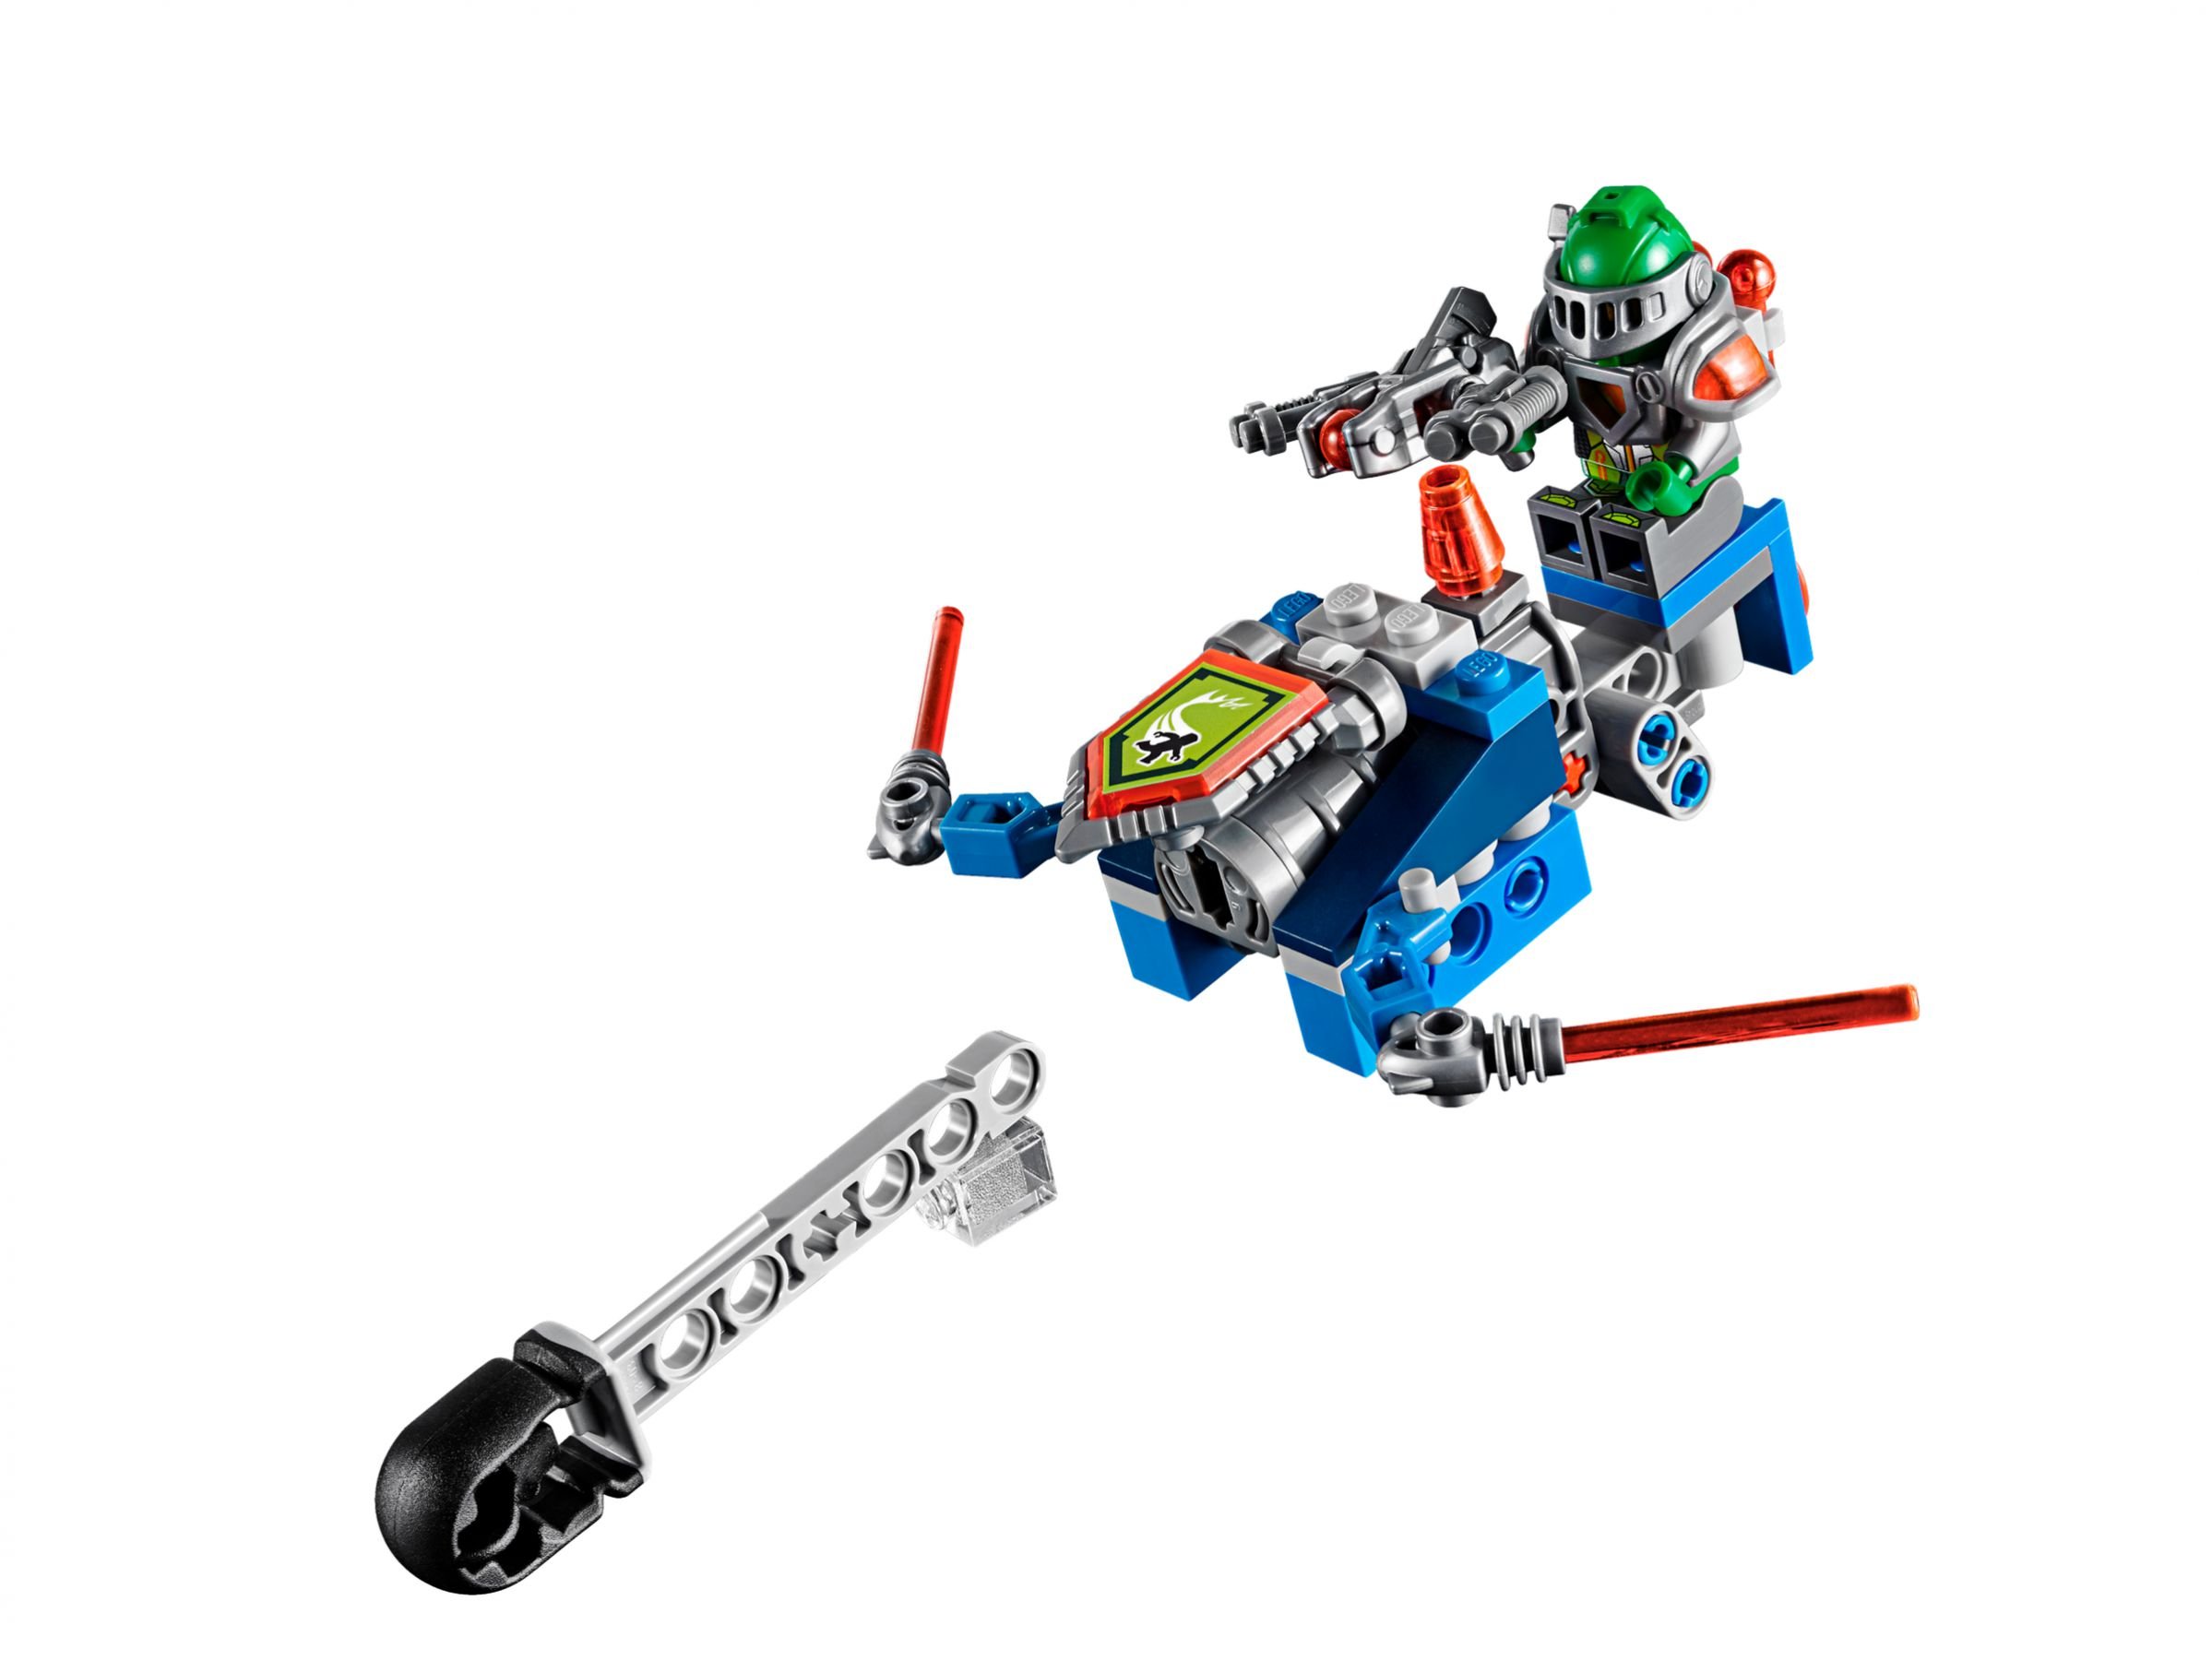 LEGO Nexo Knights 70317 Fortrex – Die rollende Festung LEGO_70317_alt10.jpg